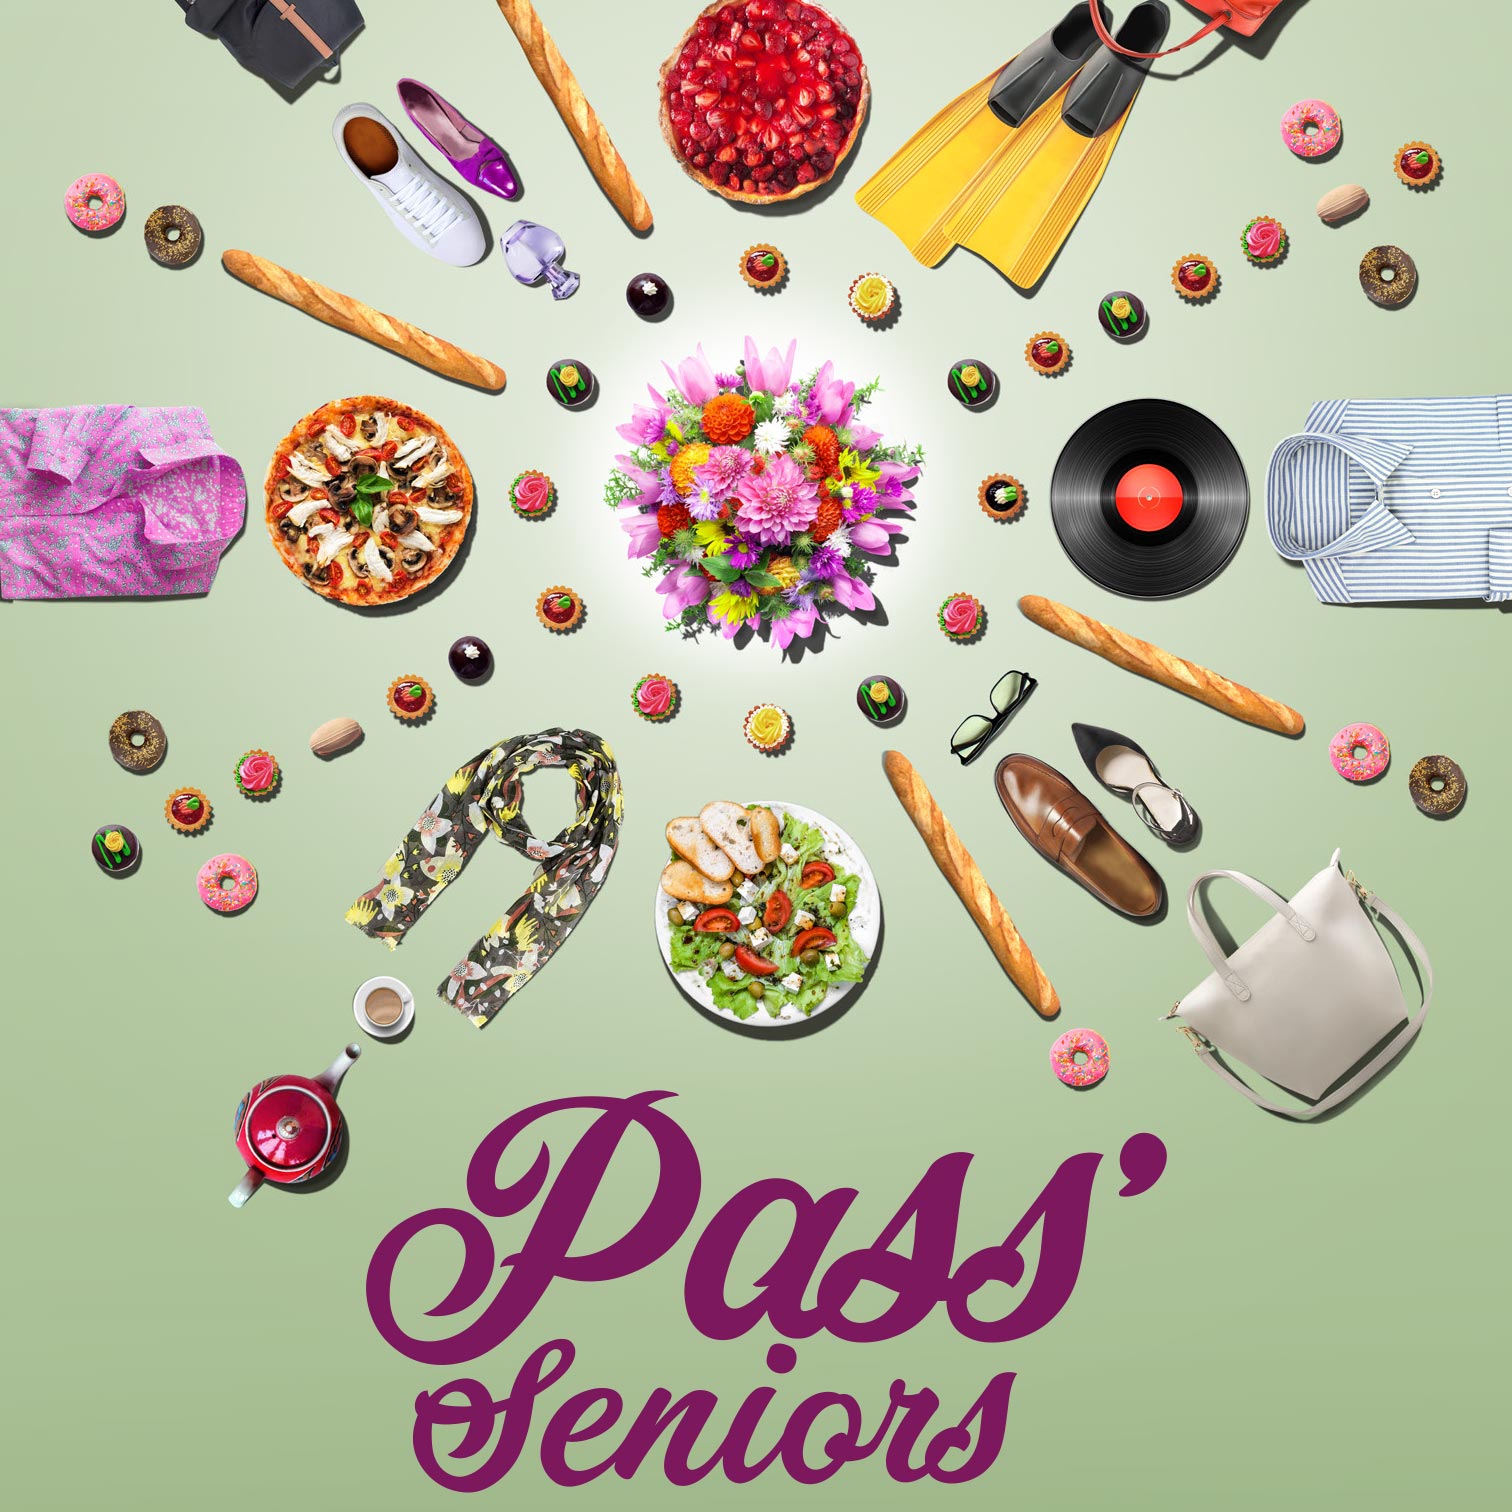 Seniors vincennois, le Pass’seniors vous est offert